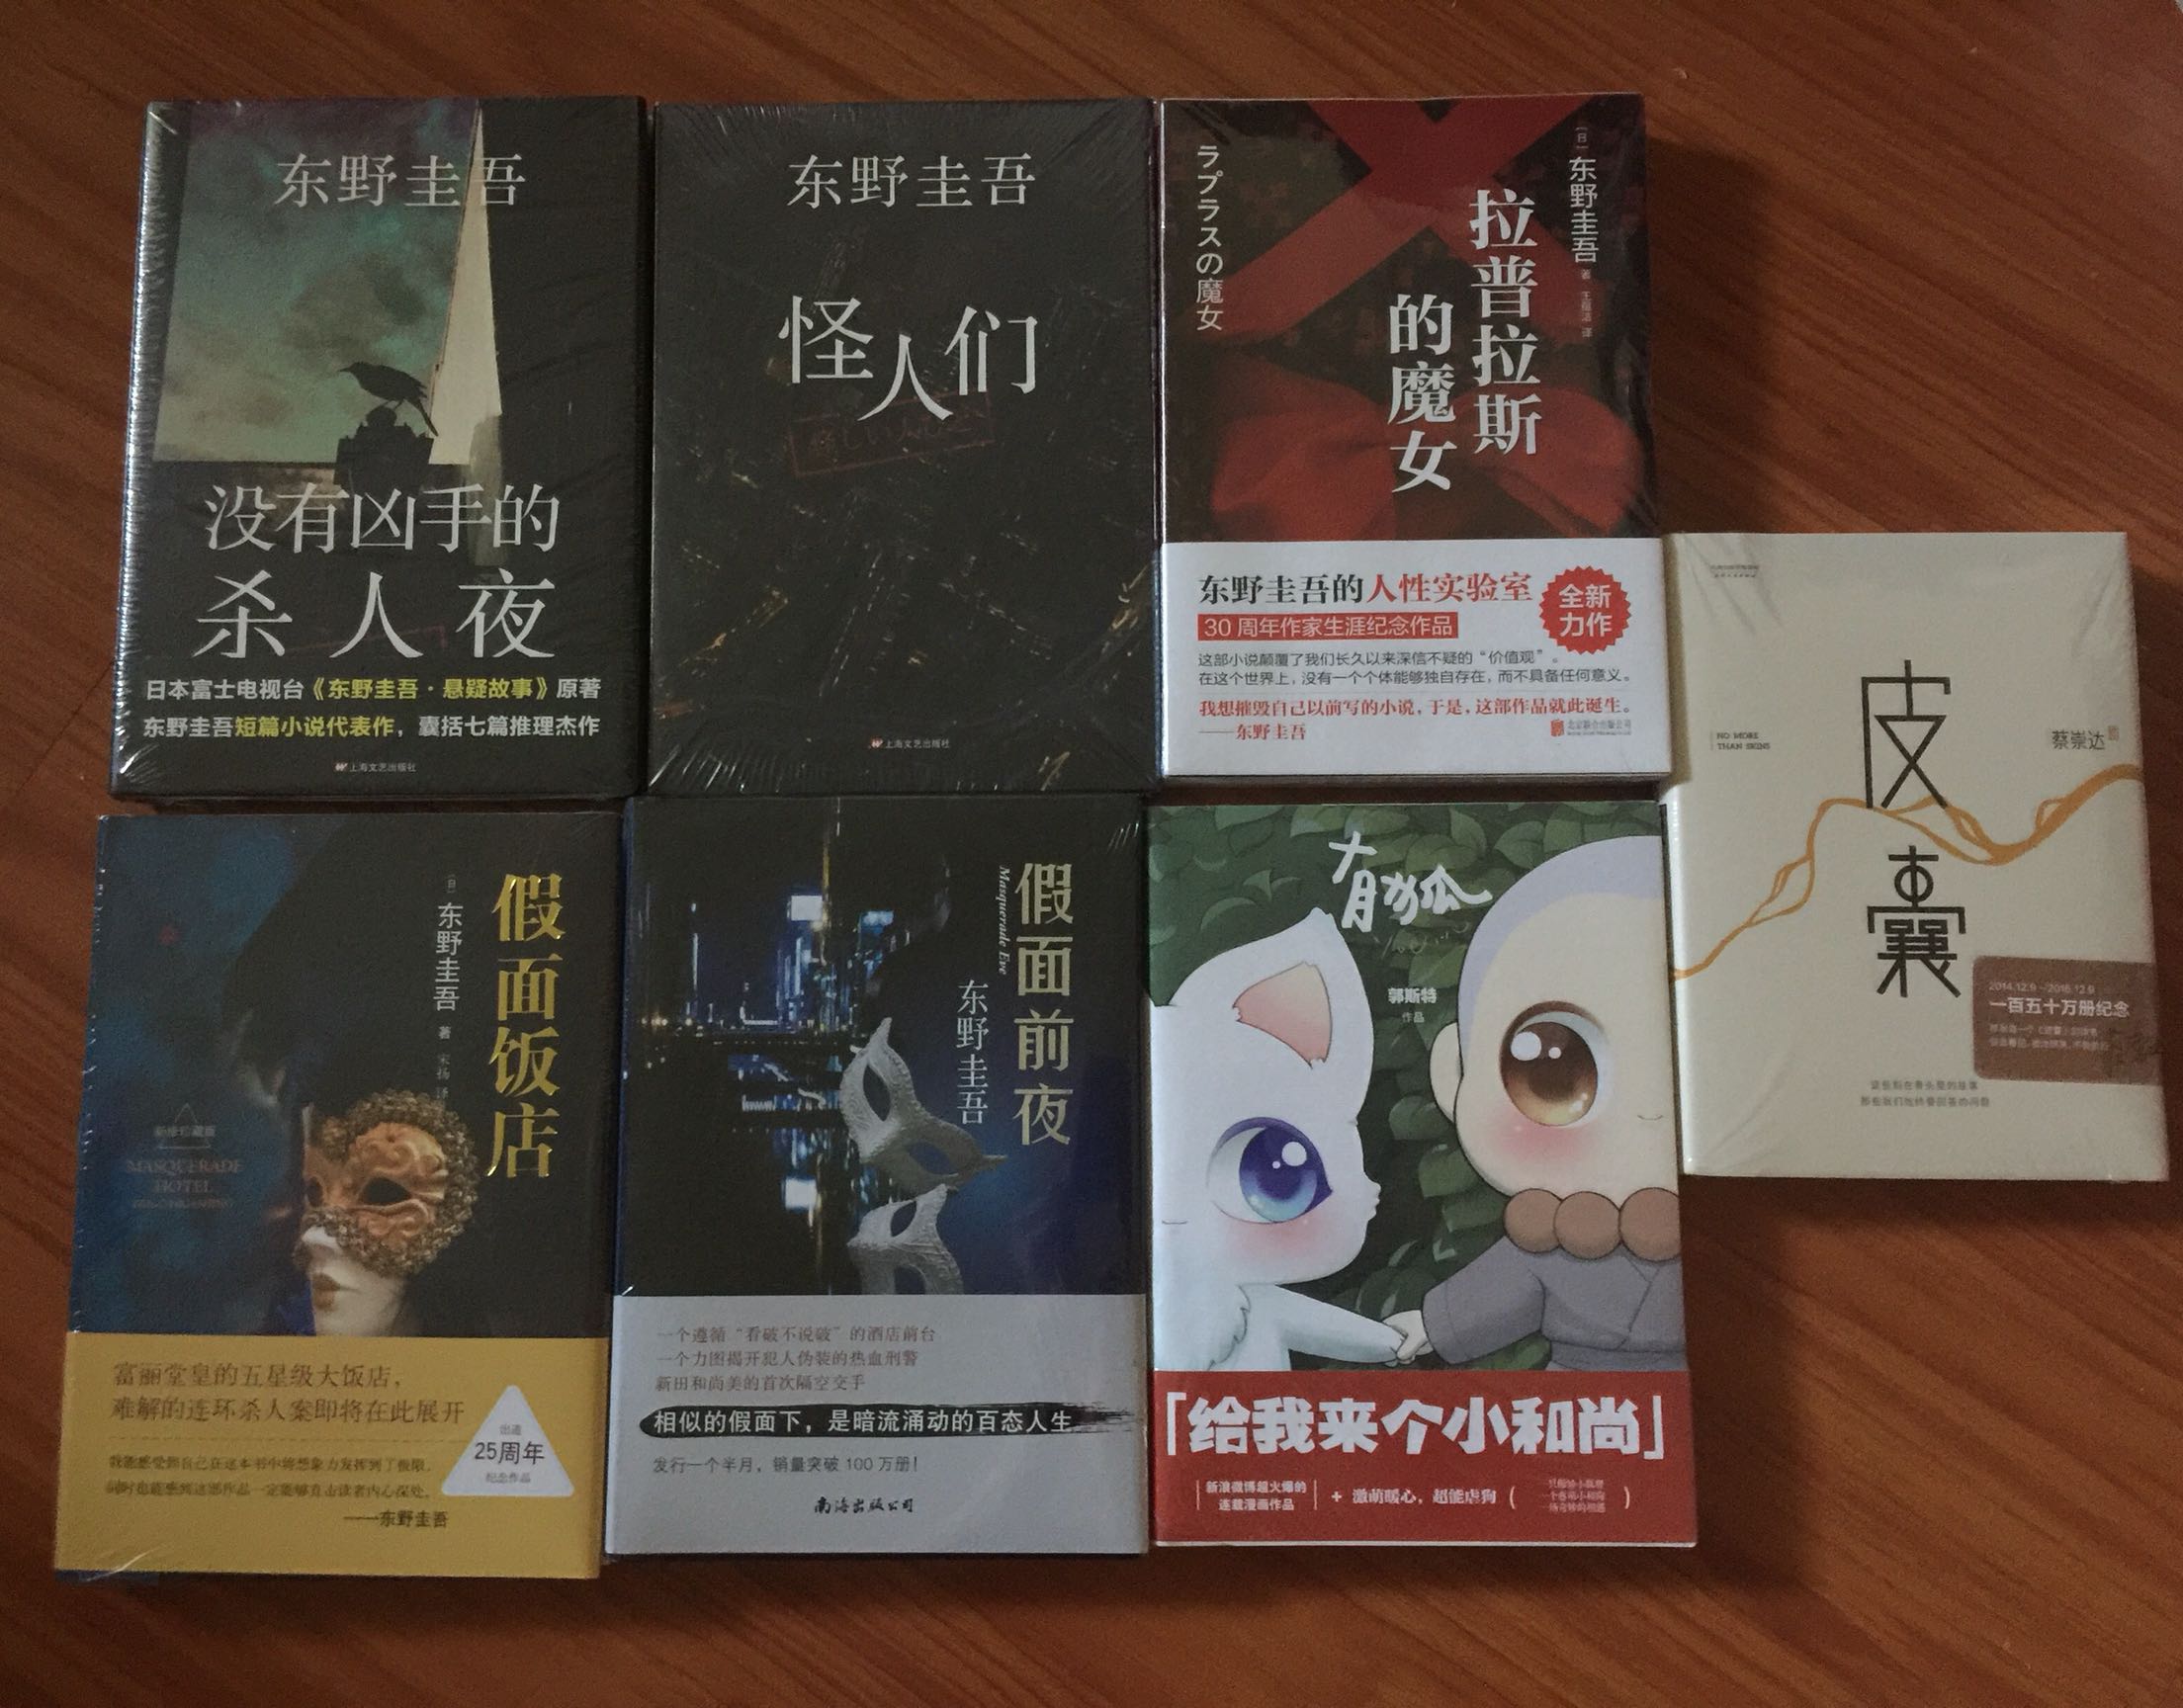 一直很喜欢东野圭吾 买了很多本了 很不错 又有书可以看了